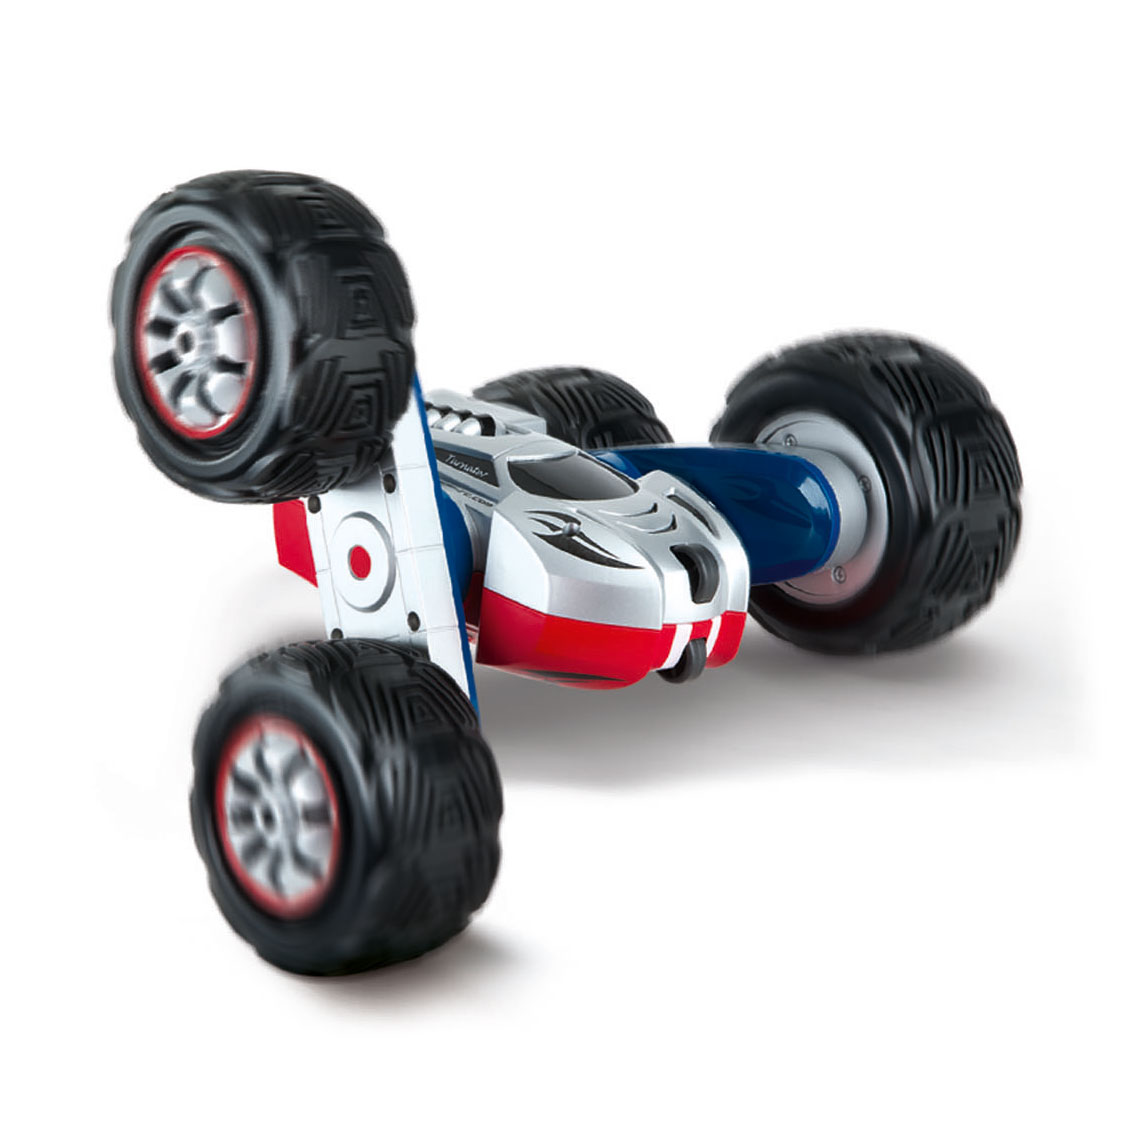 Carrera RC - Turnator | Thimble Toys